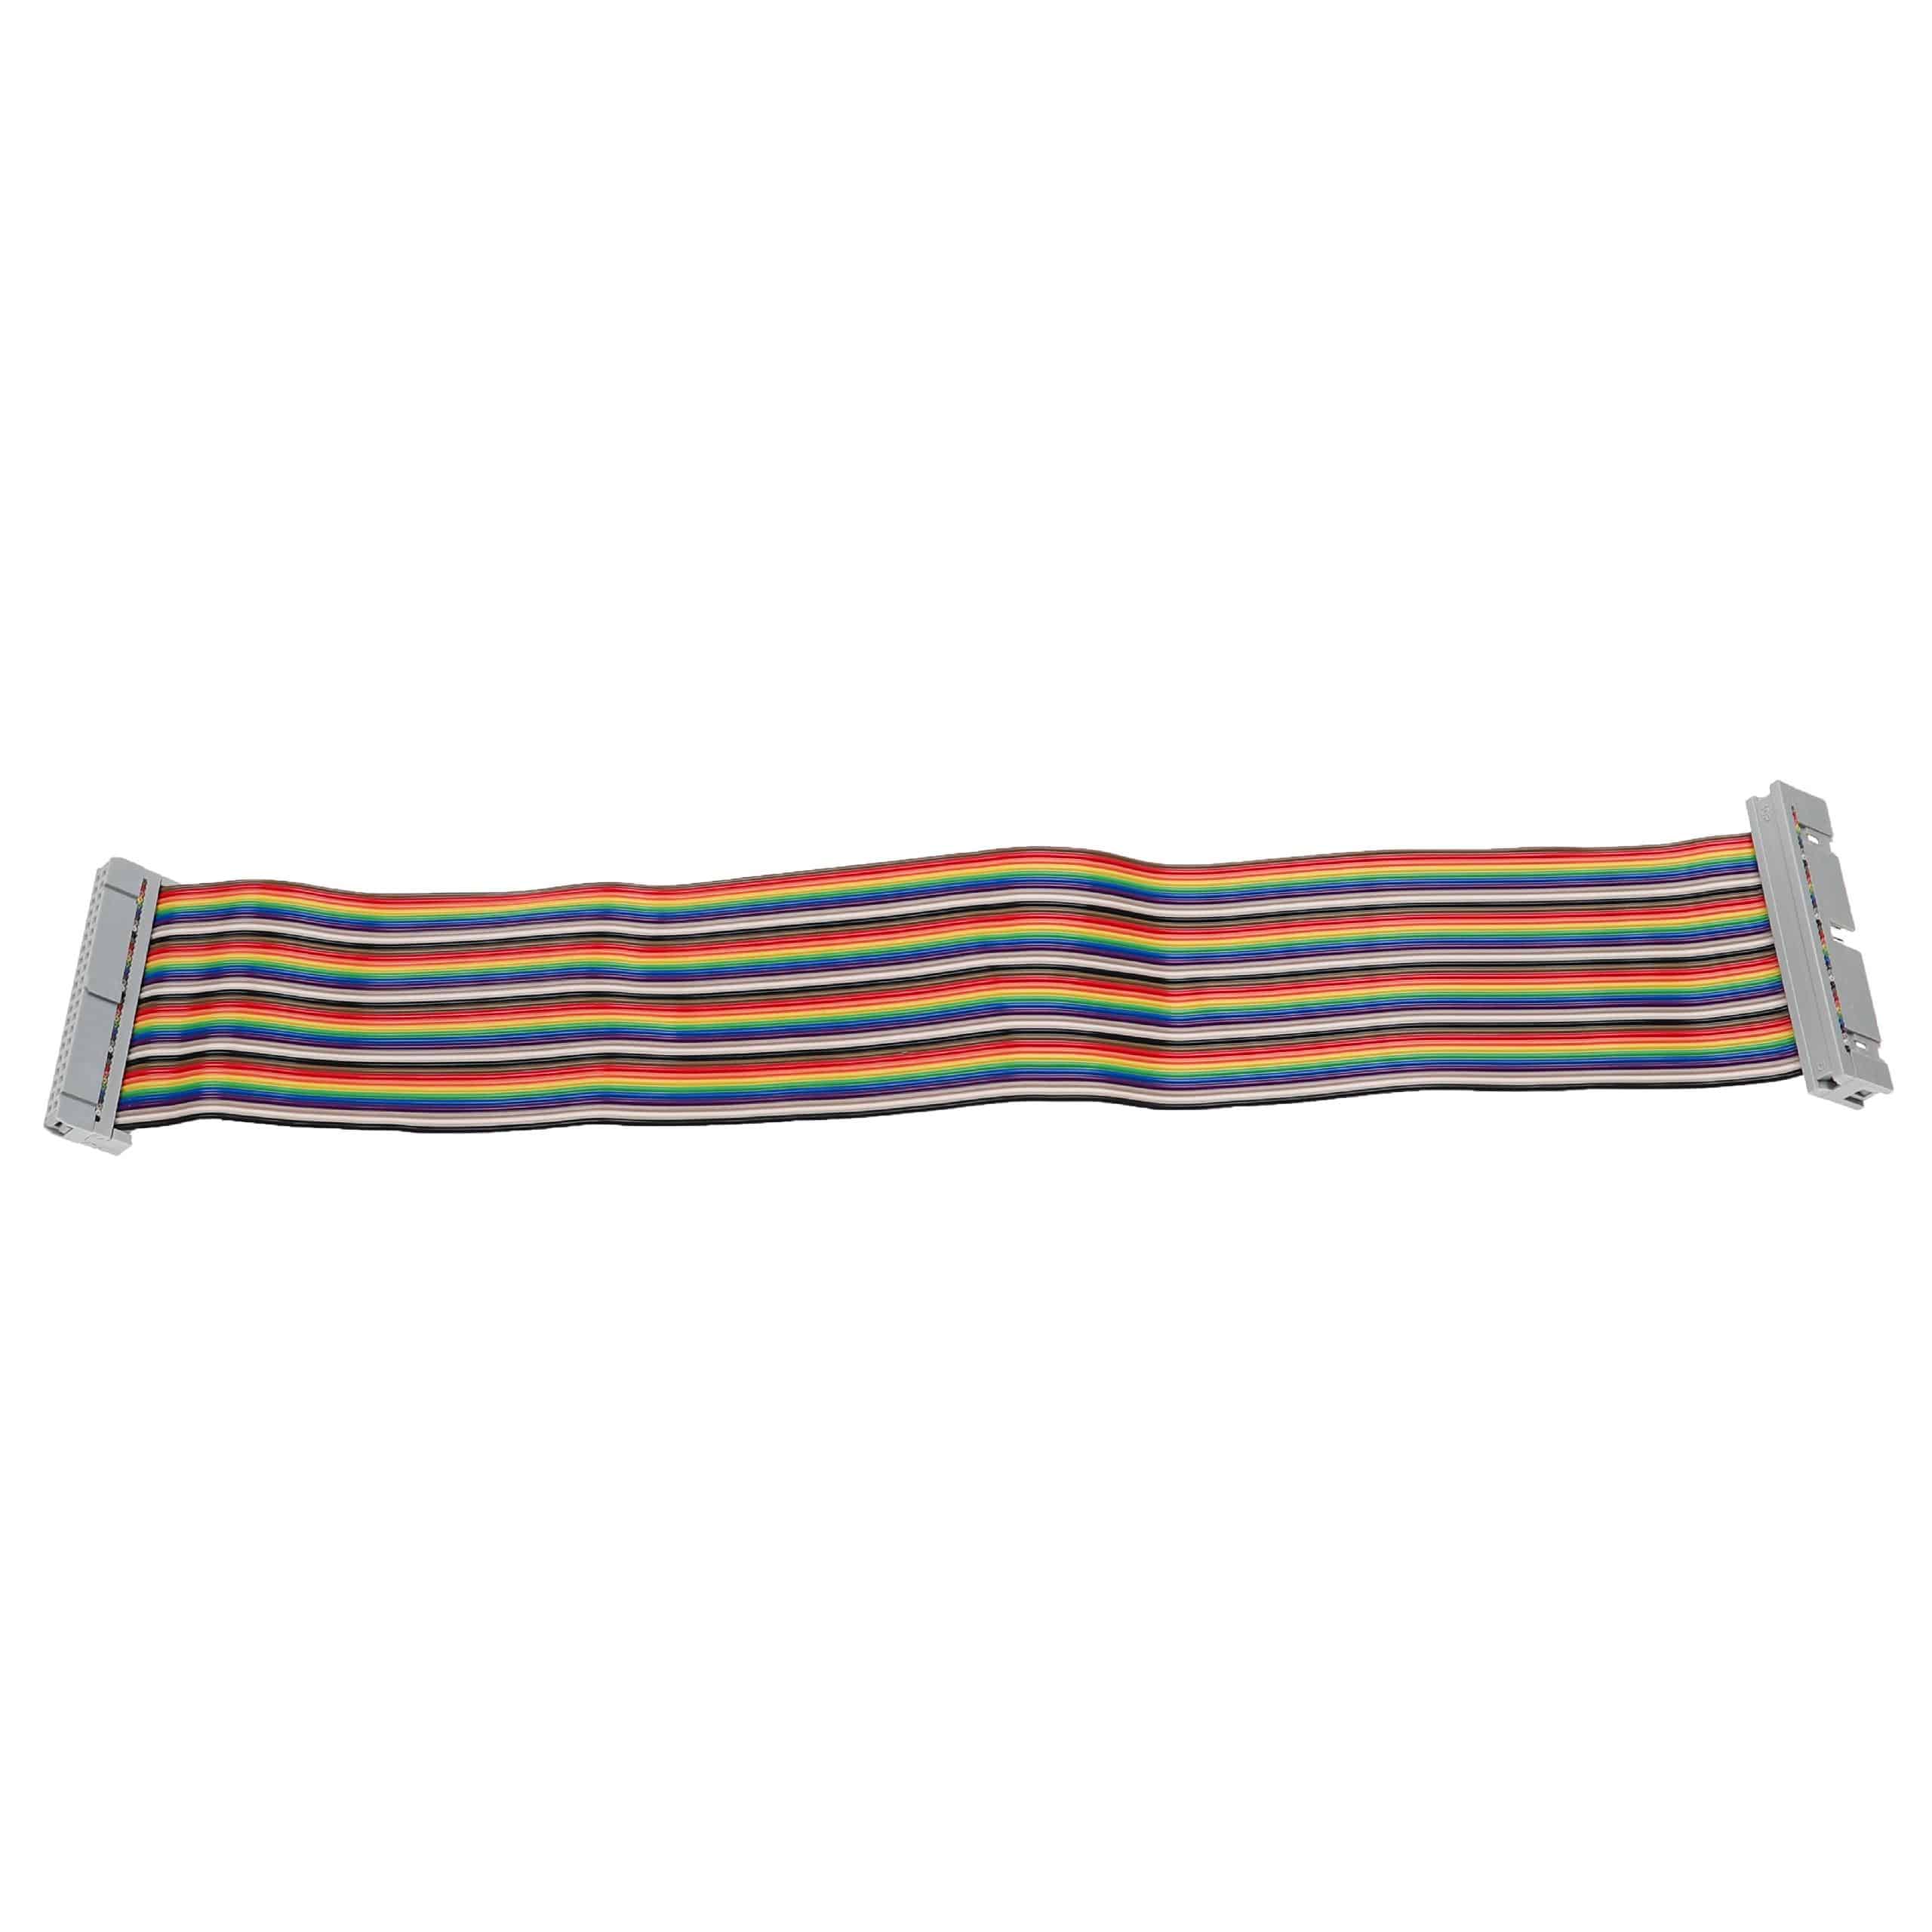 GPIO Cable 40 Pin suitable for Raspberry Pi Mini Computer - GPIO Extension Cable, Multi-Coloured, 30 cm